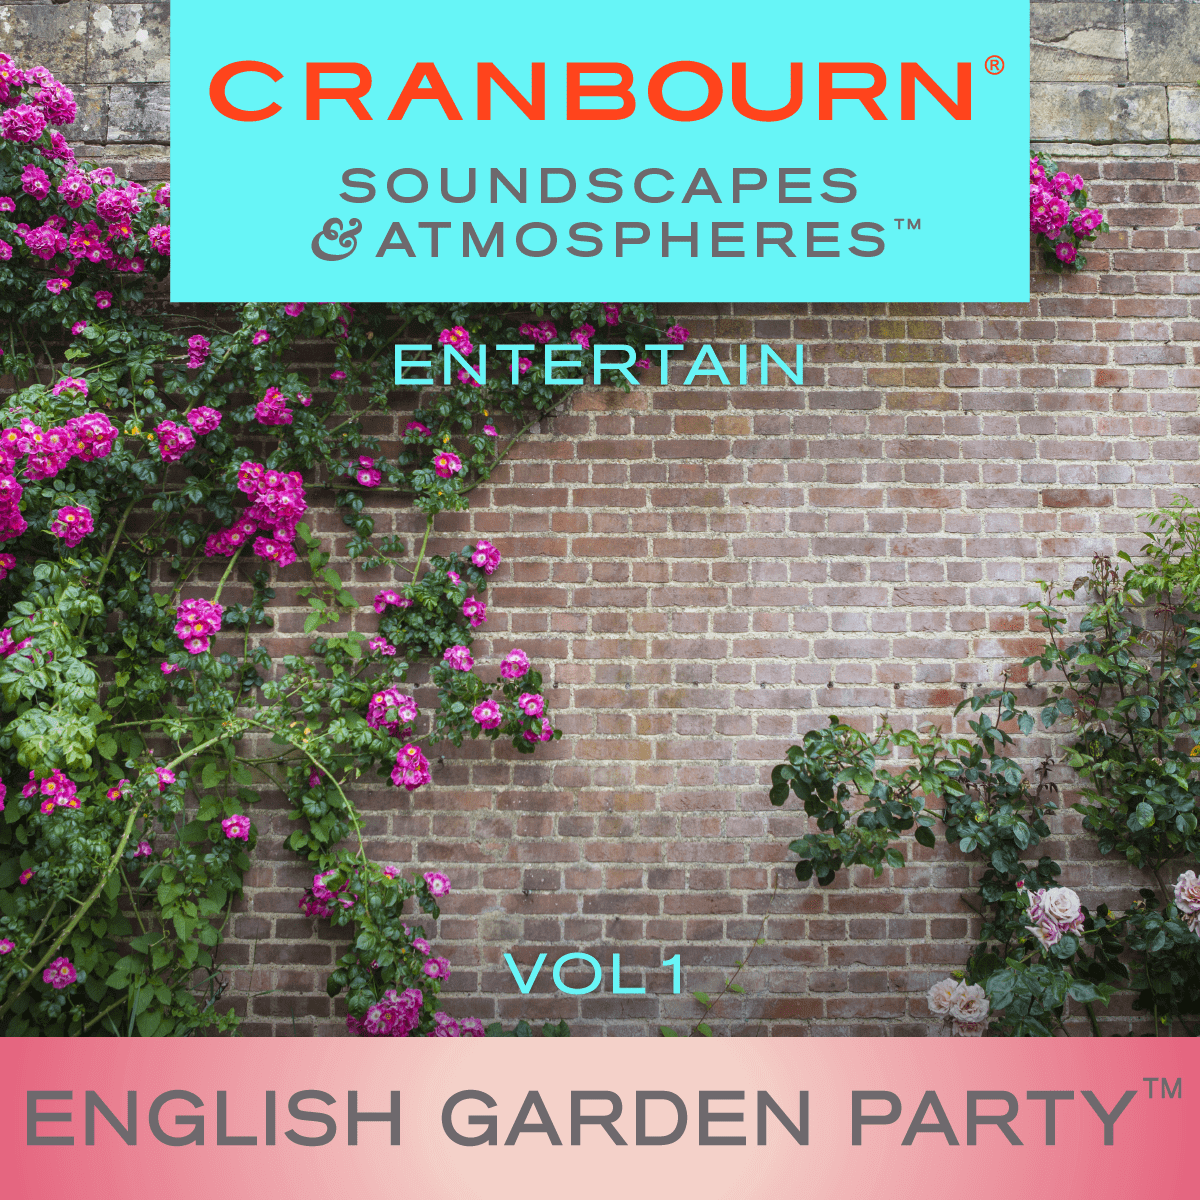 English Garden Party™